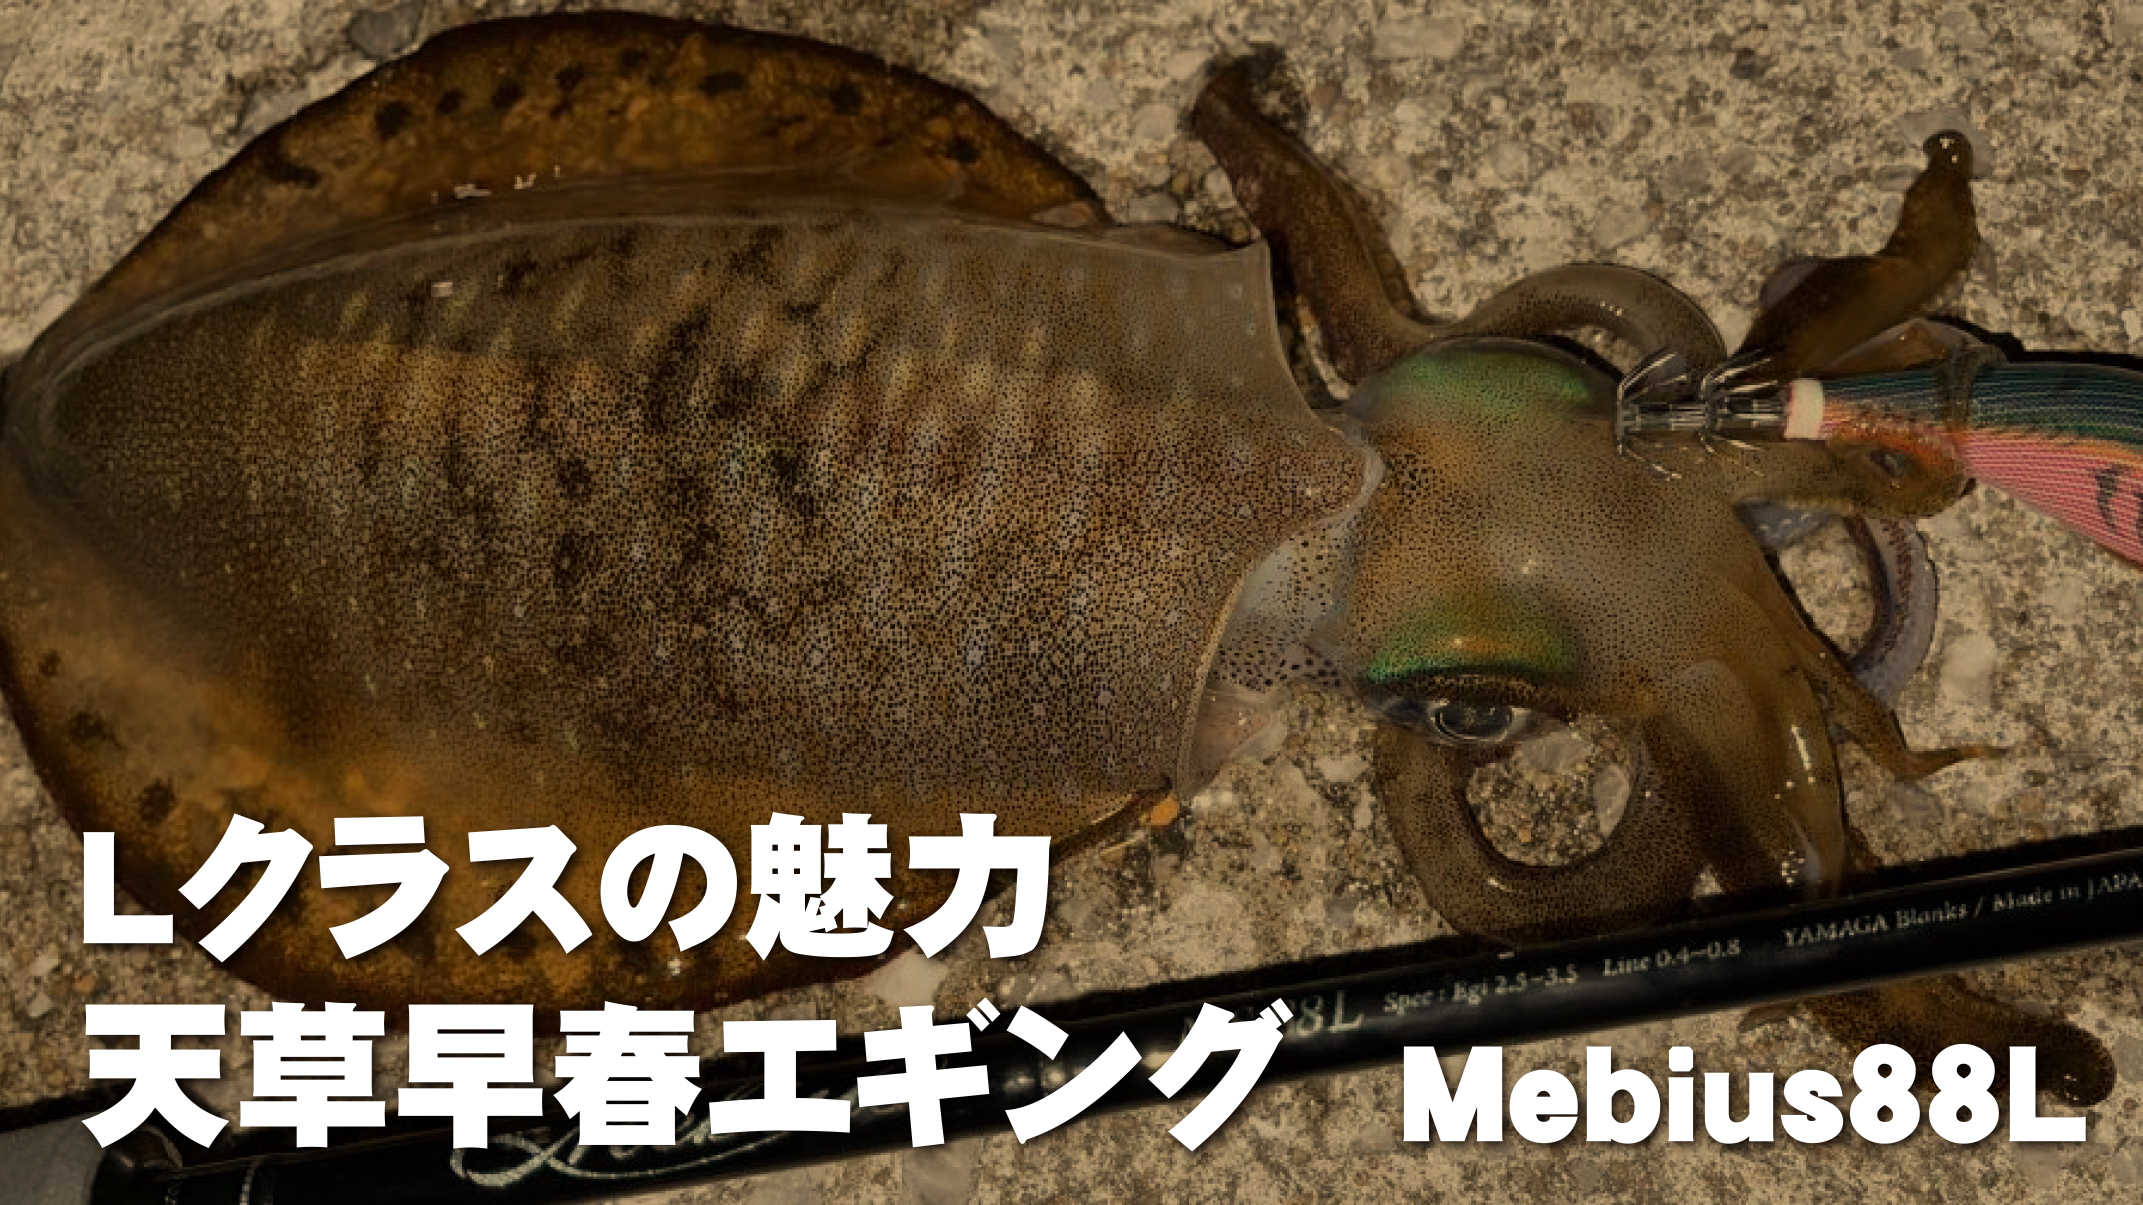 【YBスタッフレポート】Mebius88L・天草早春エギング